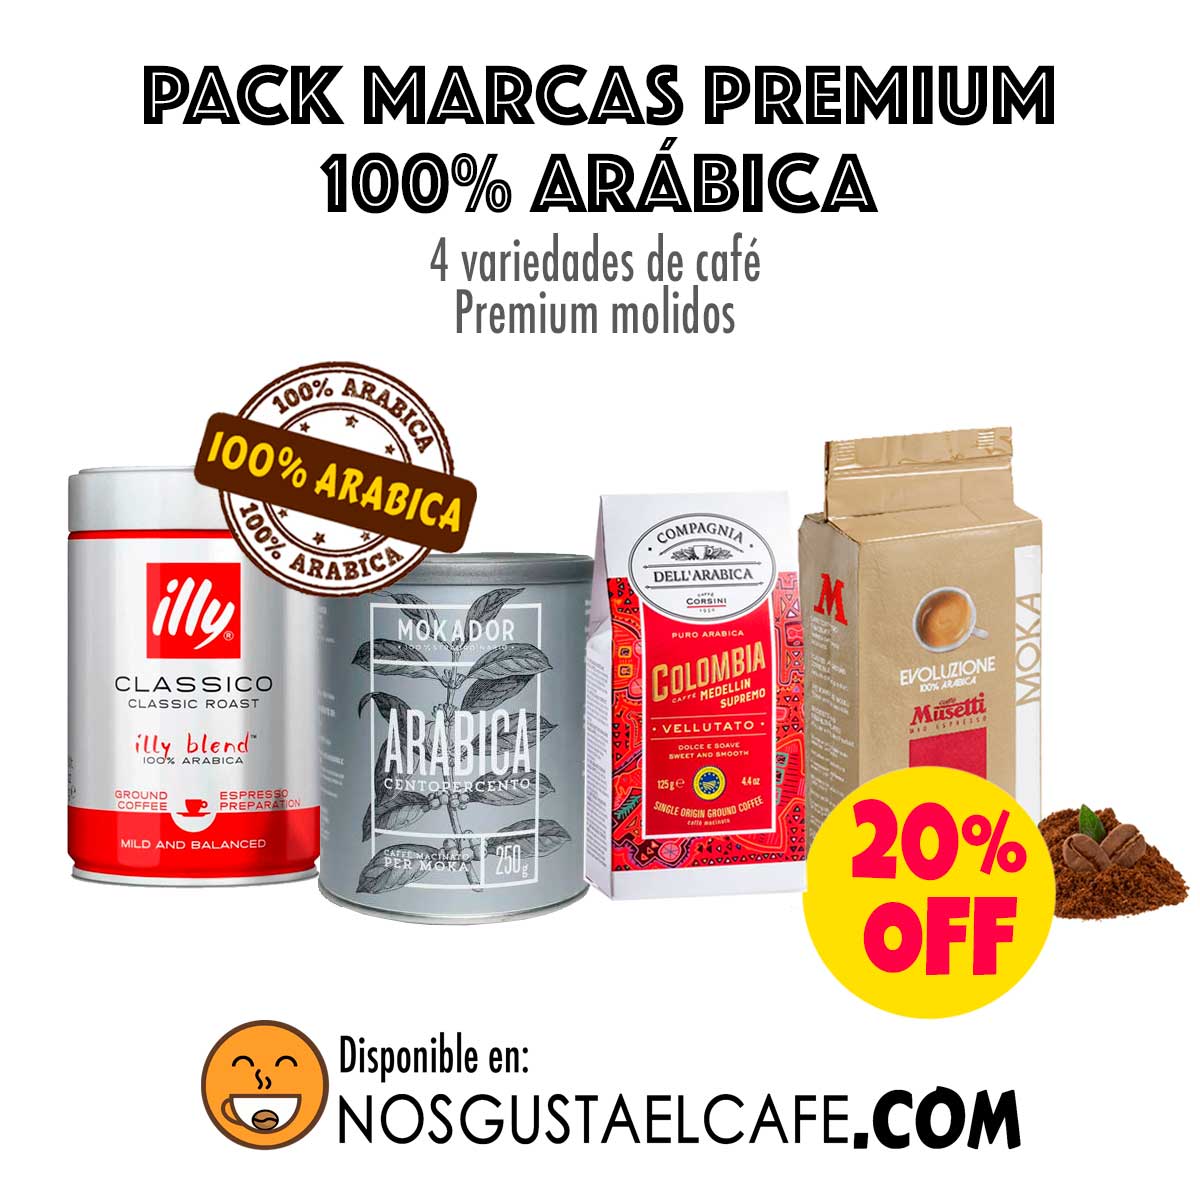 Pack 4 marcas Premium, 100% arábica, molidos - Nos gusta el café Chile ☕